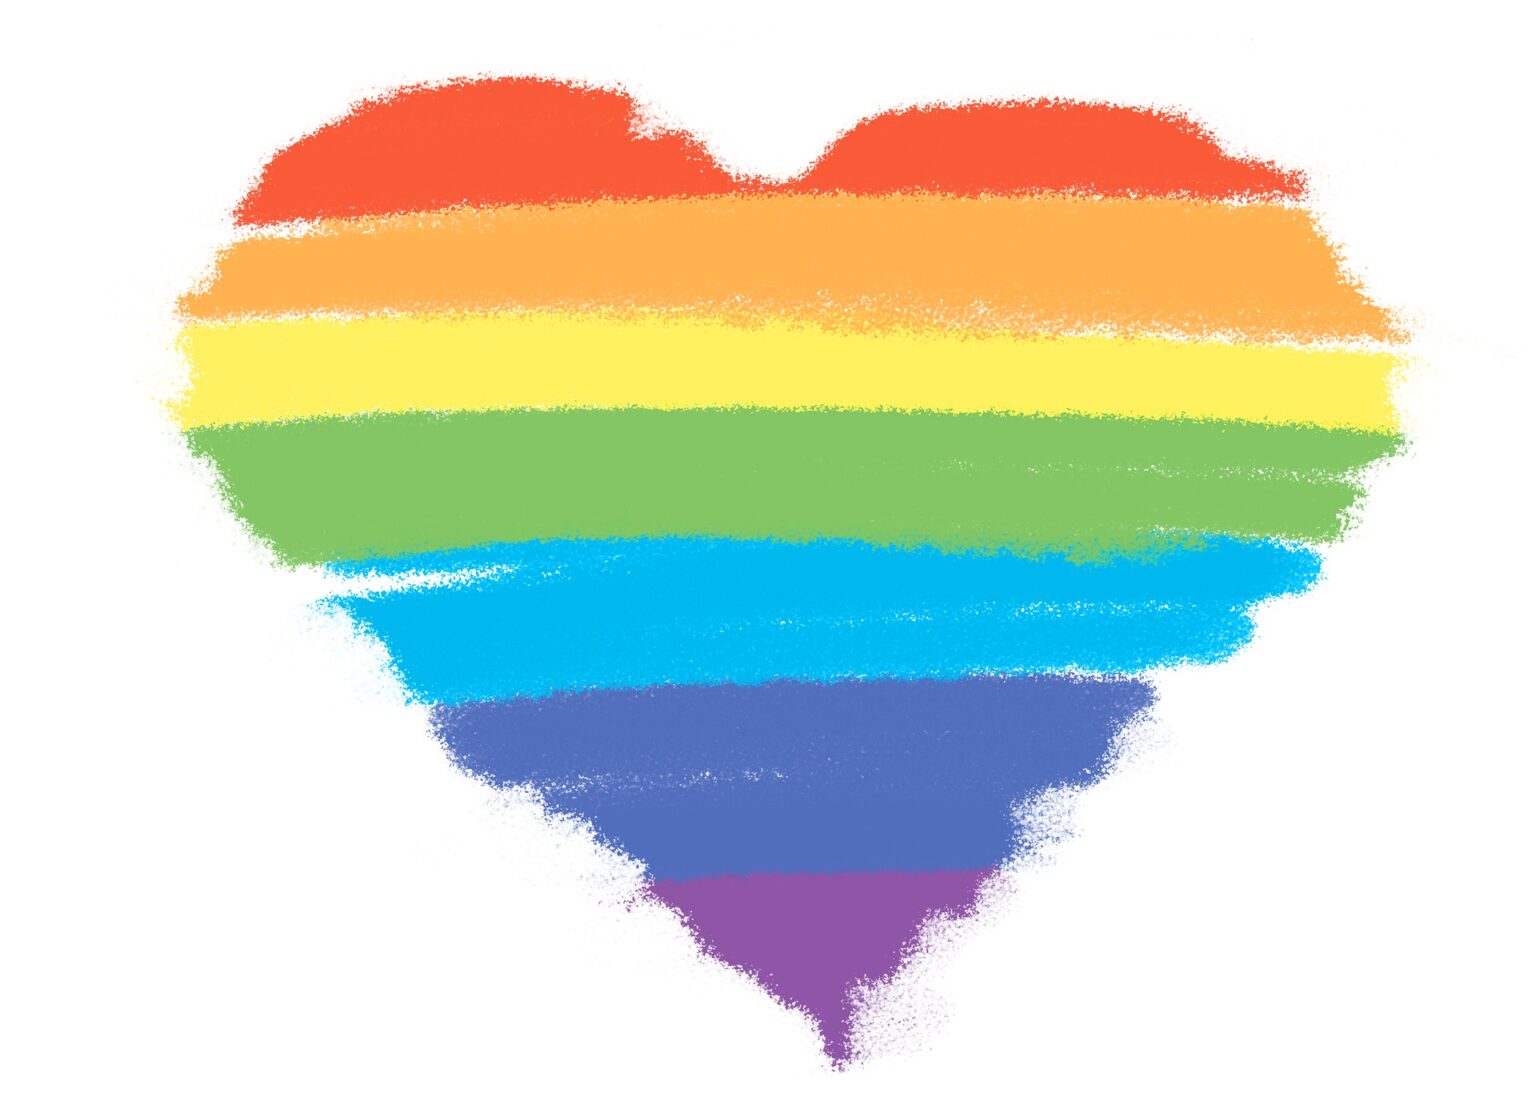 Die Illustration von Alexandra Koch auf Pixabay zeigt ein Herz in Regenbogenfarben im Stil einer Kreidezeichnung.